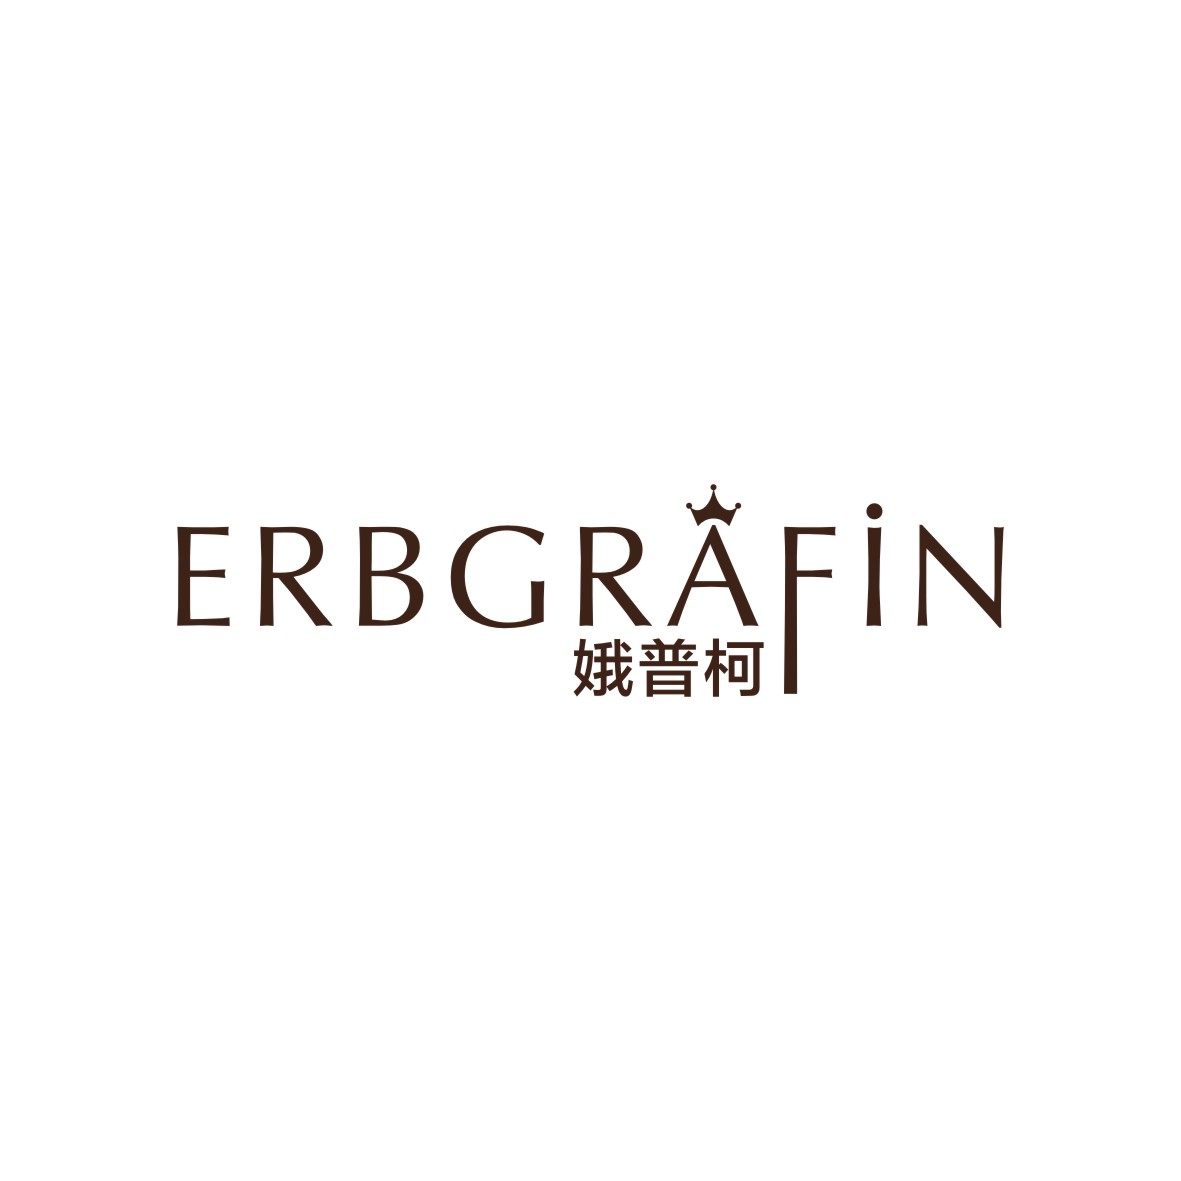 广州知麦网络科技有限公司商标娥普柯 ERBGRAFIN（03类）多少钱？